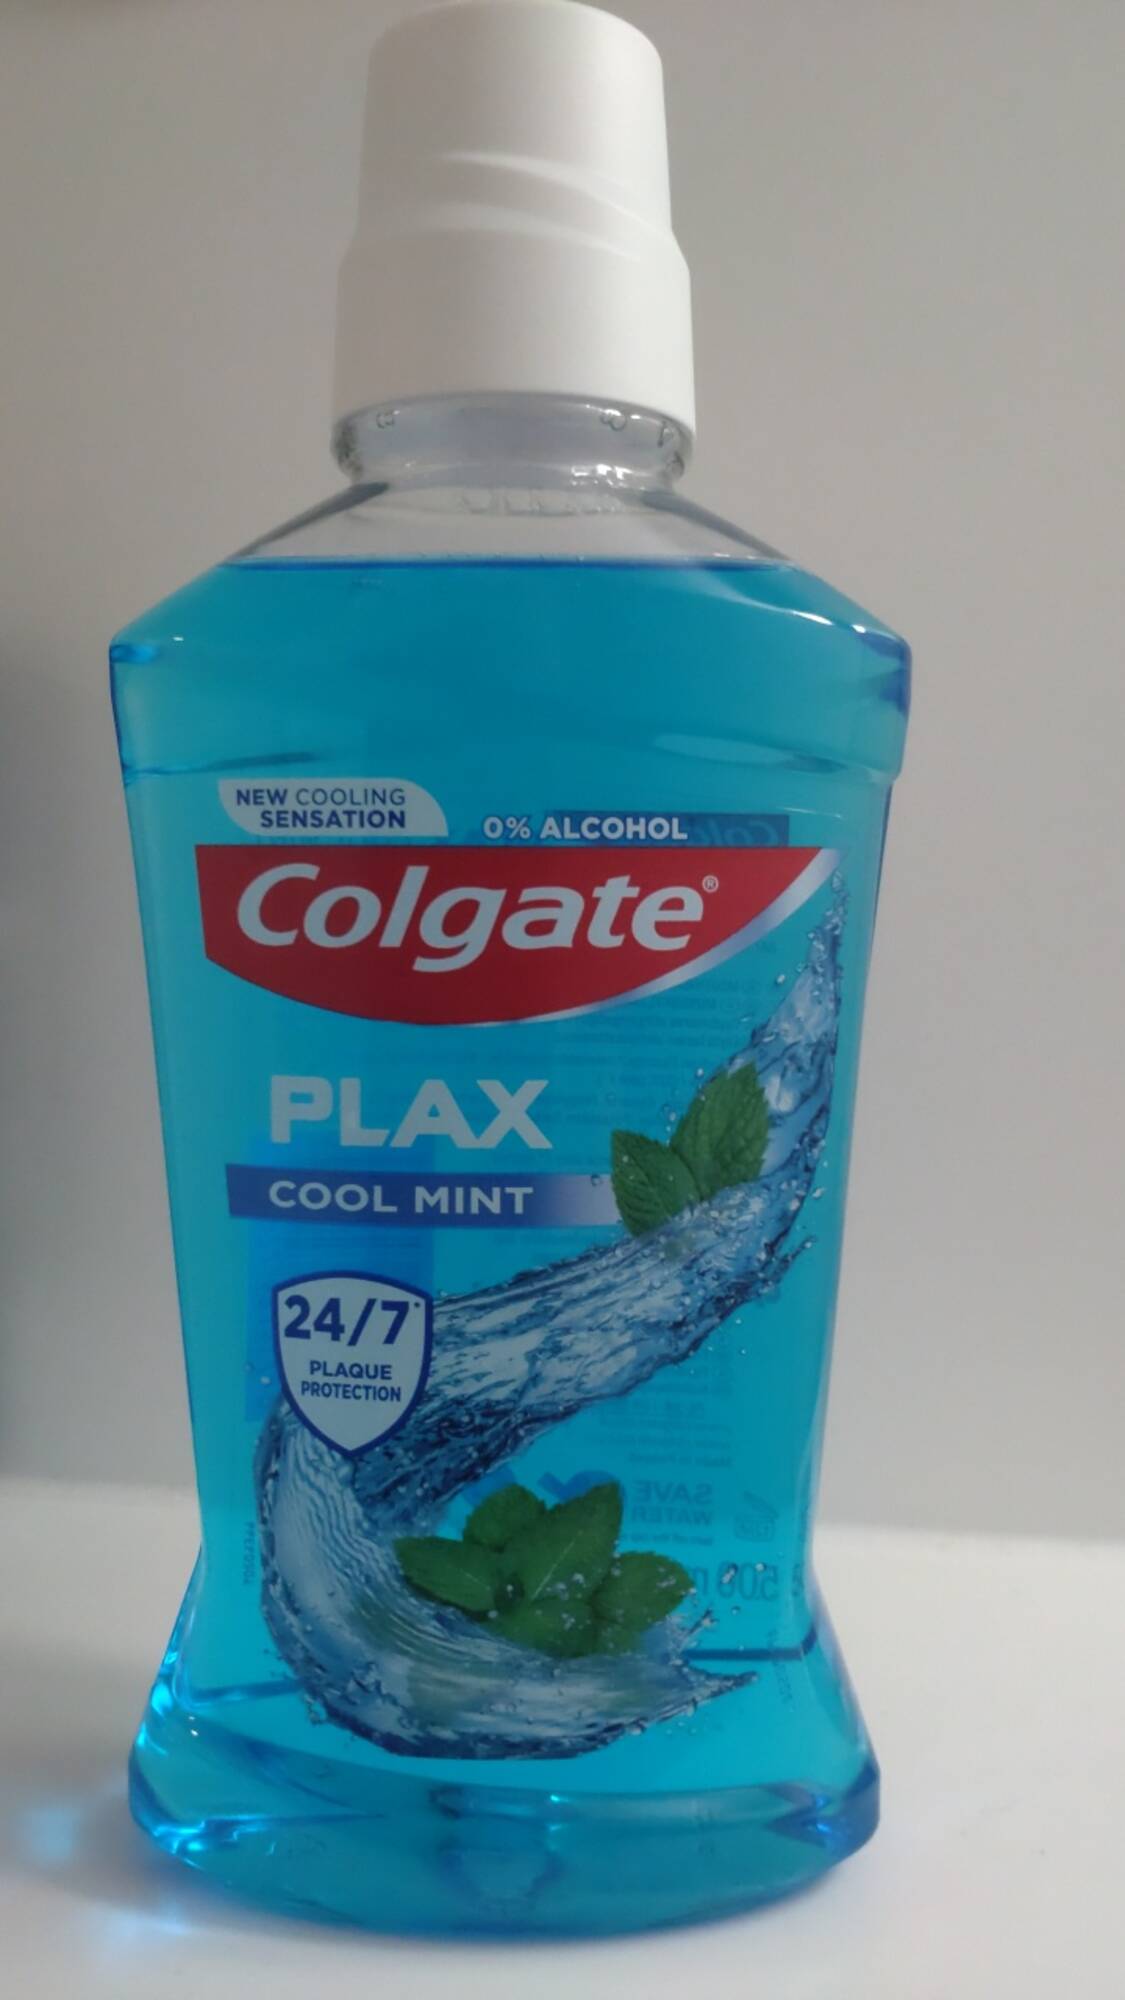 COLGATE - Plax cool mint - Mouthwash